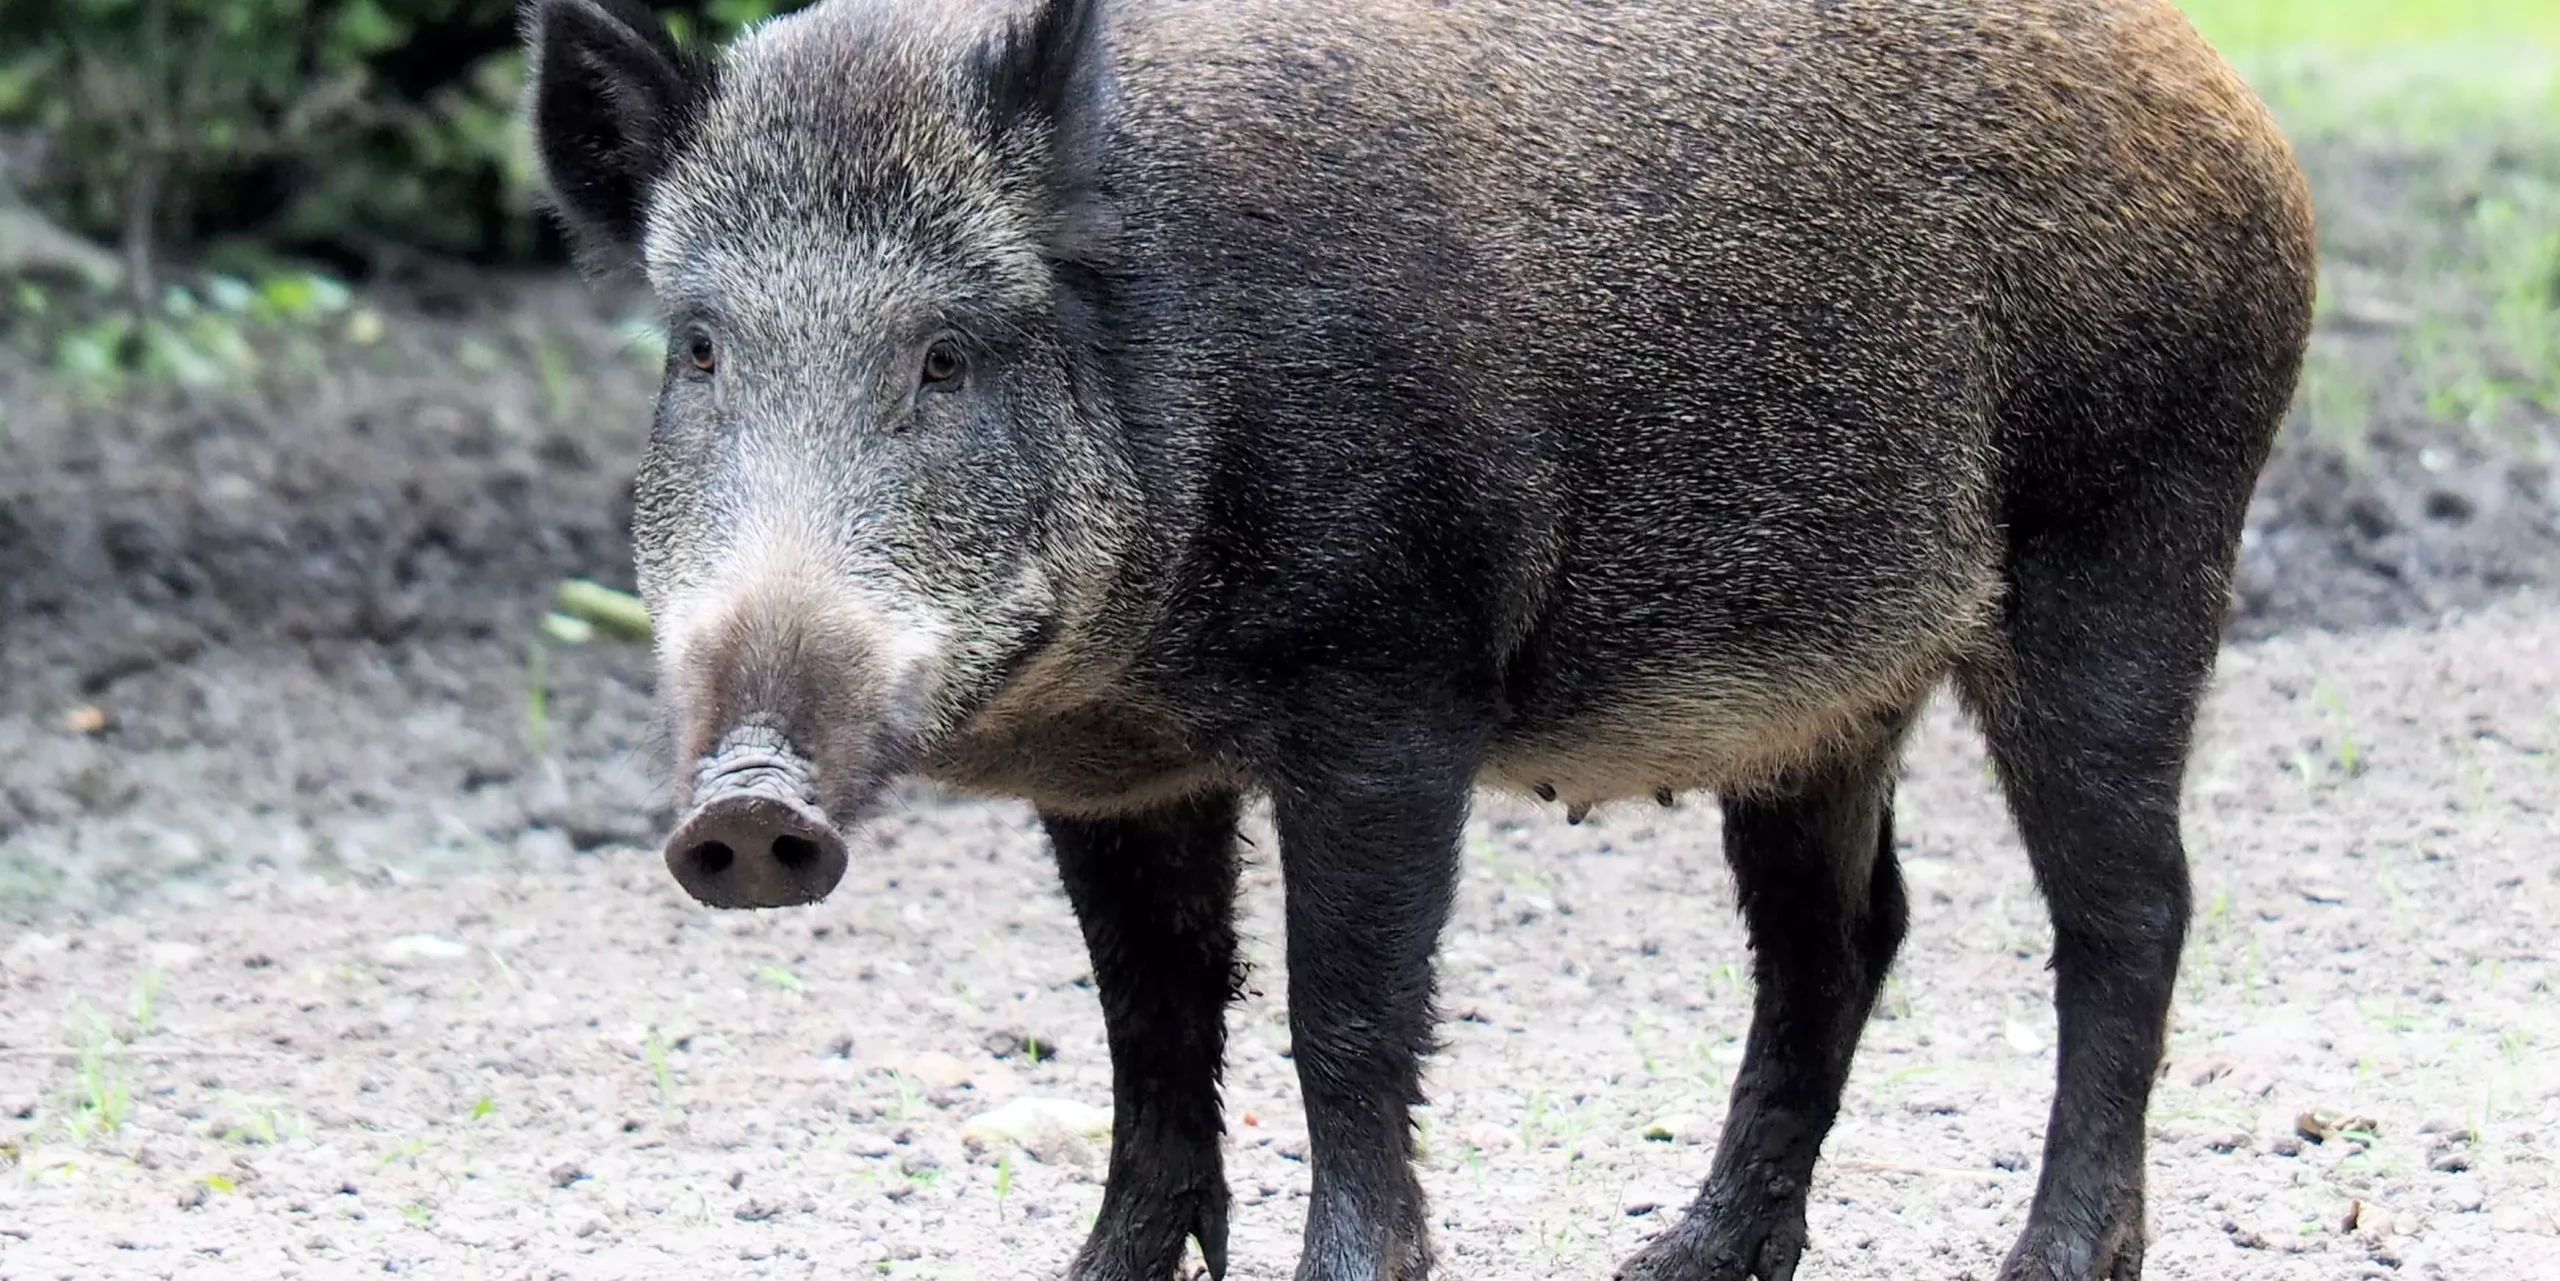 Peste porcine africaine (PPA) : une menace sérieuse pour les éleveurs de porcs